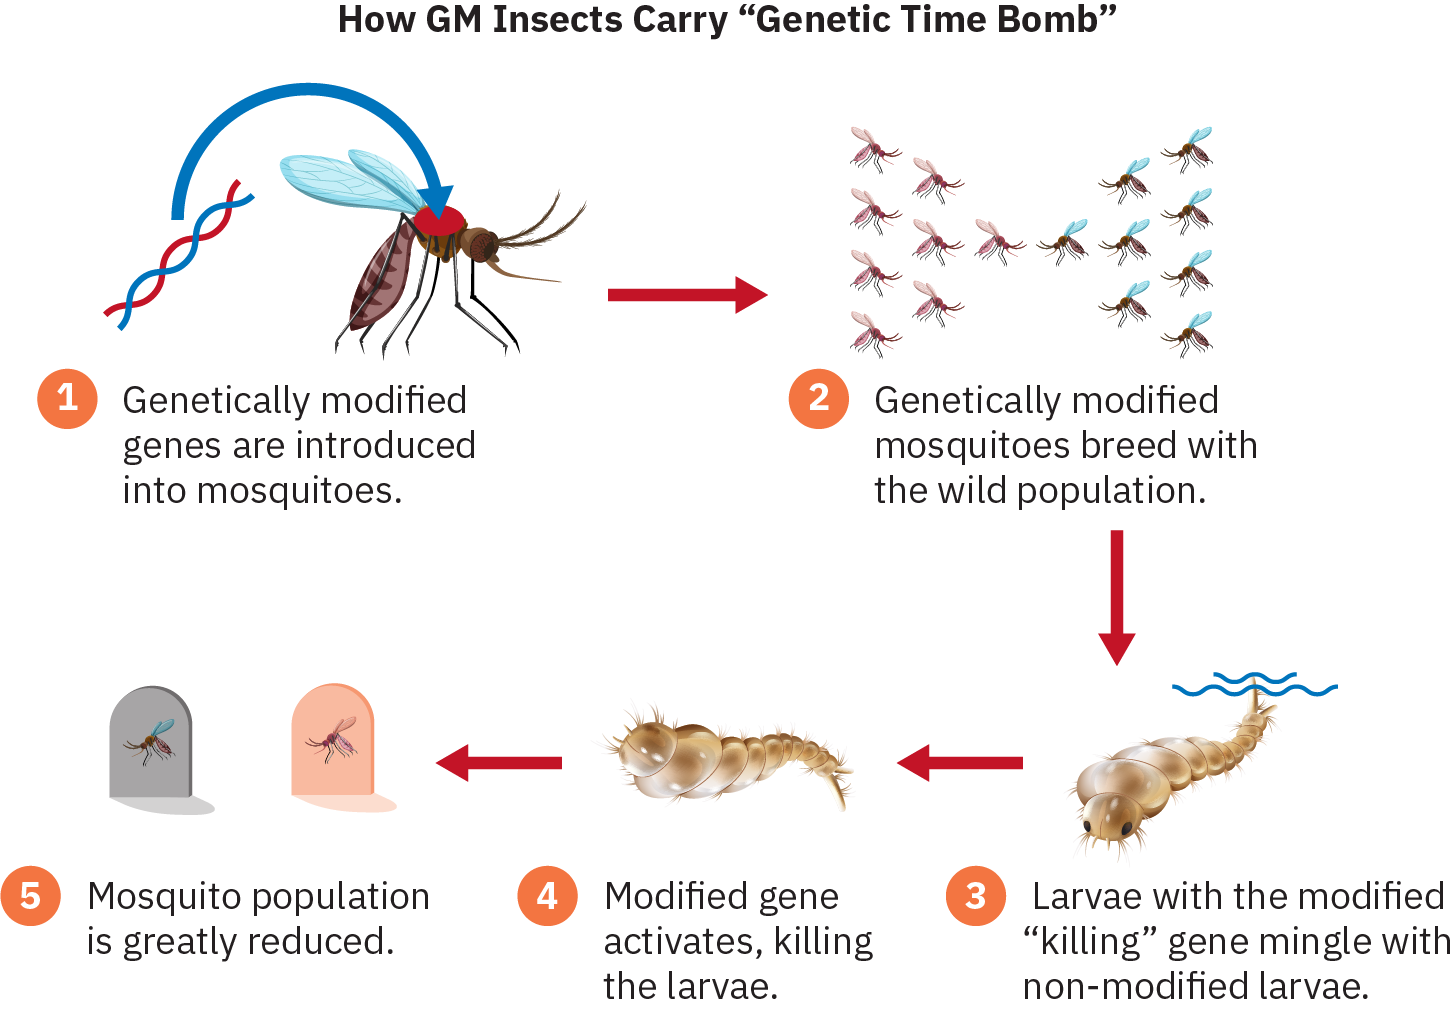 信息图描述了以下步骤：1) 转基因基因被引入蚊子。2) 转基因蚊子与野生种群一起繁殖。3) 具有改良的 “杀死” 基因的幼虫与未改良的幼虫混合在一起。4) 修饰基因激活，杀死幼虫。5) 蚊子种群大大减少了。